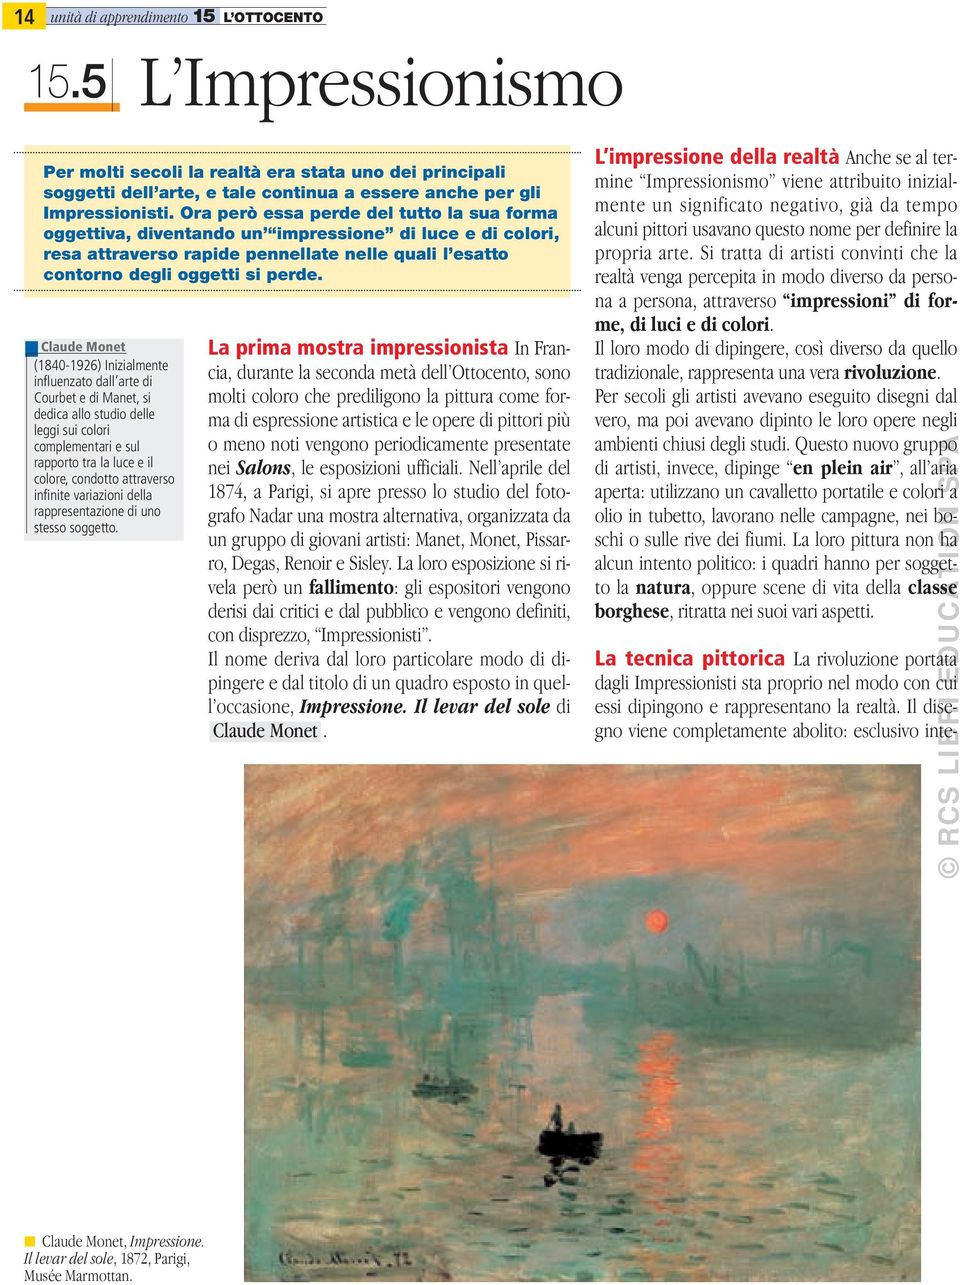 Claude Monet (1840-1926) Inizialmente influenzato dall arte di Courbet e di Manet, si dedica allo studio delle leggi sui colori complementari e sul rapporto tra la luce e il colore, condotto